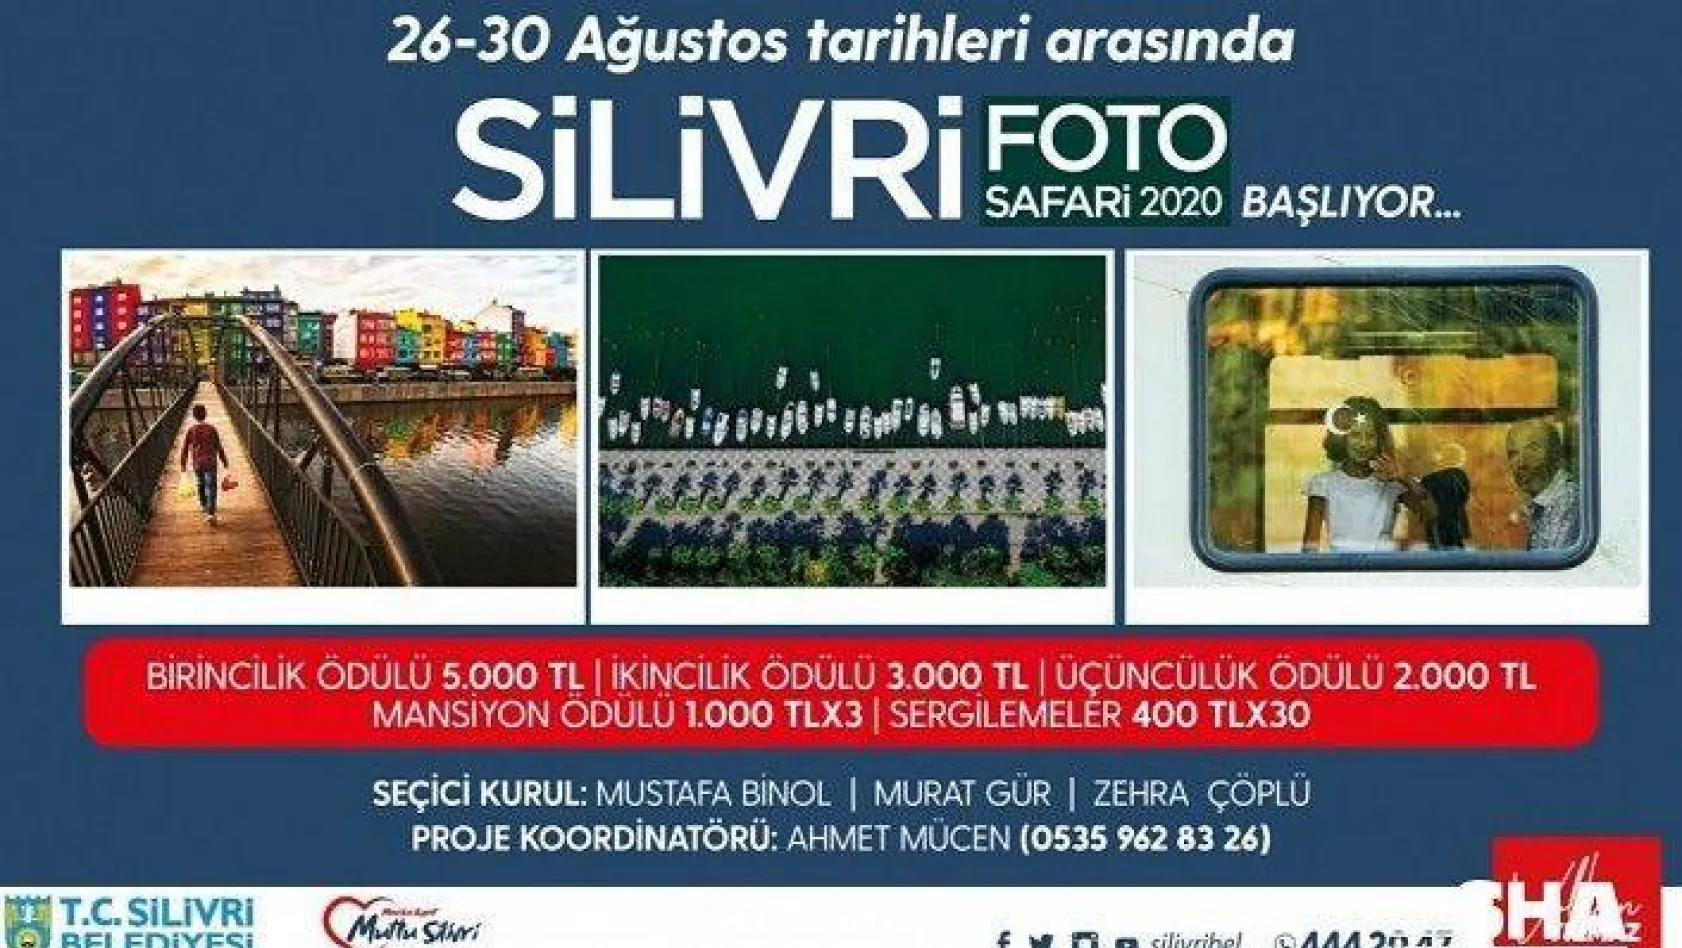 Silivri Belediyesi Foto Safari 2020 Başlıyor